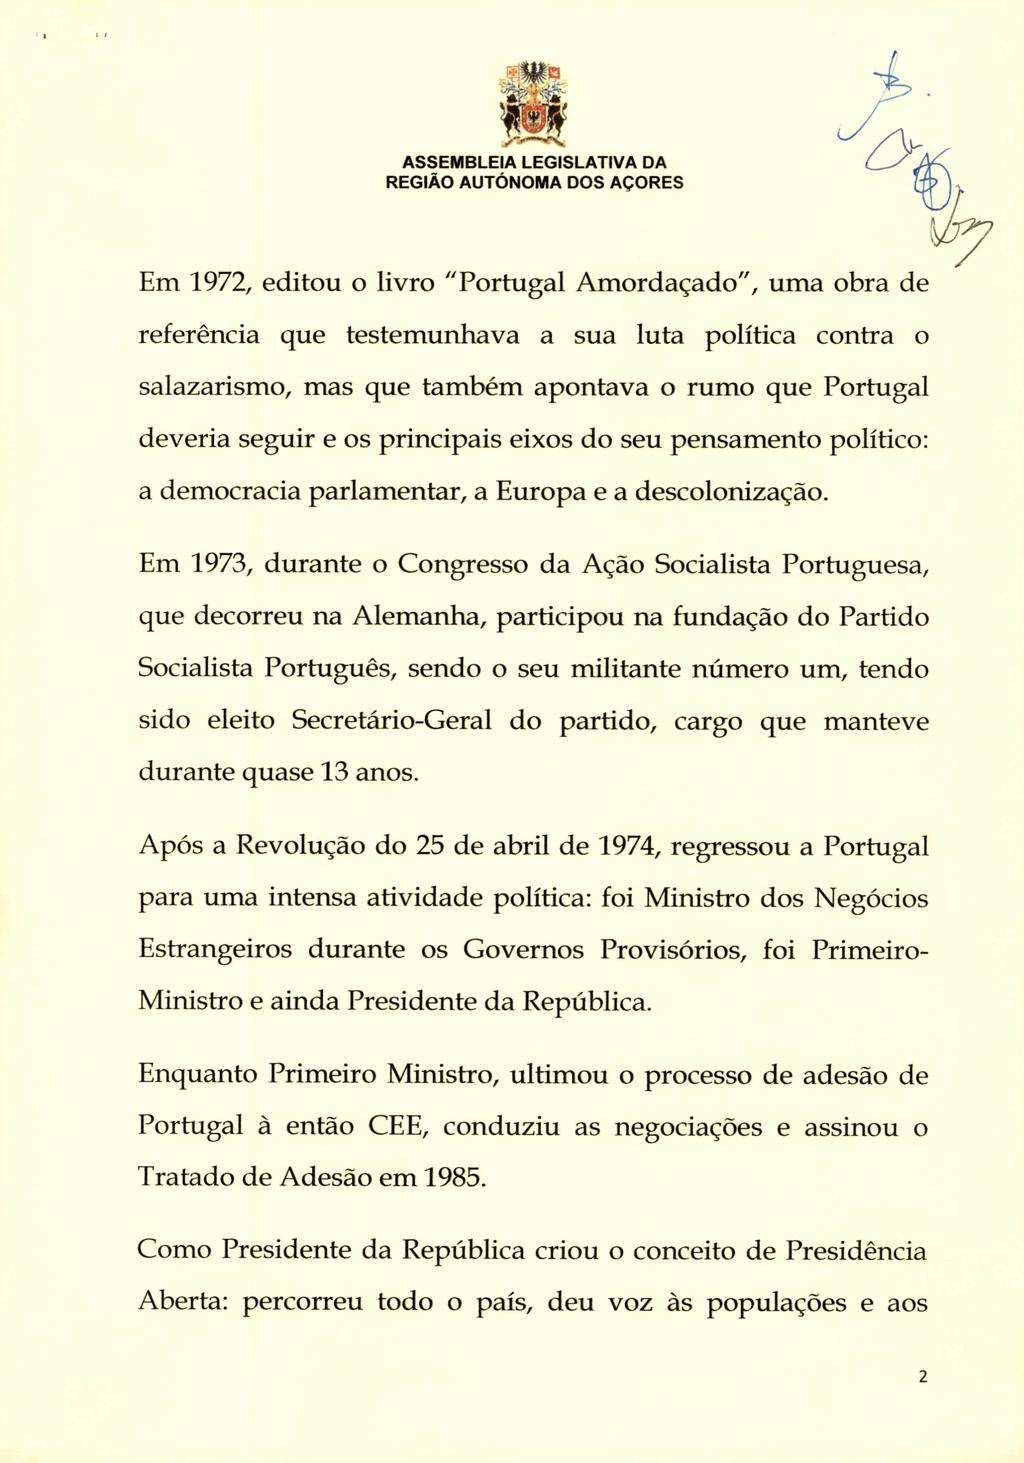 sm Em 1972, editou o livro "Portugal Amordaçado", uma obra de referência que testemunhava a sua luta política contra o salazarismo, mas que também apontava o rumo que Portugal deveria seguir e os